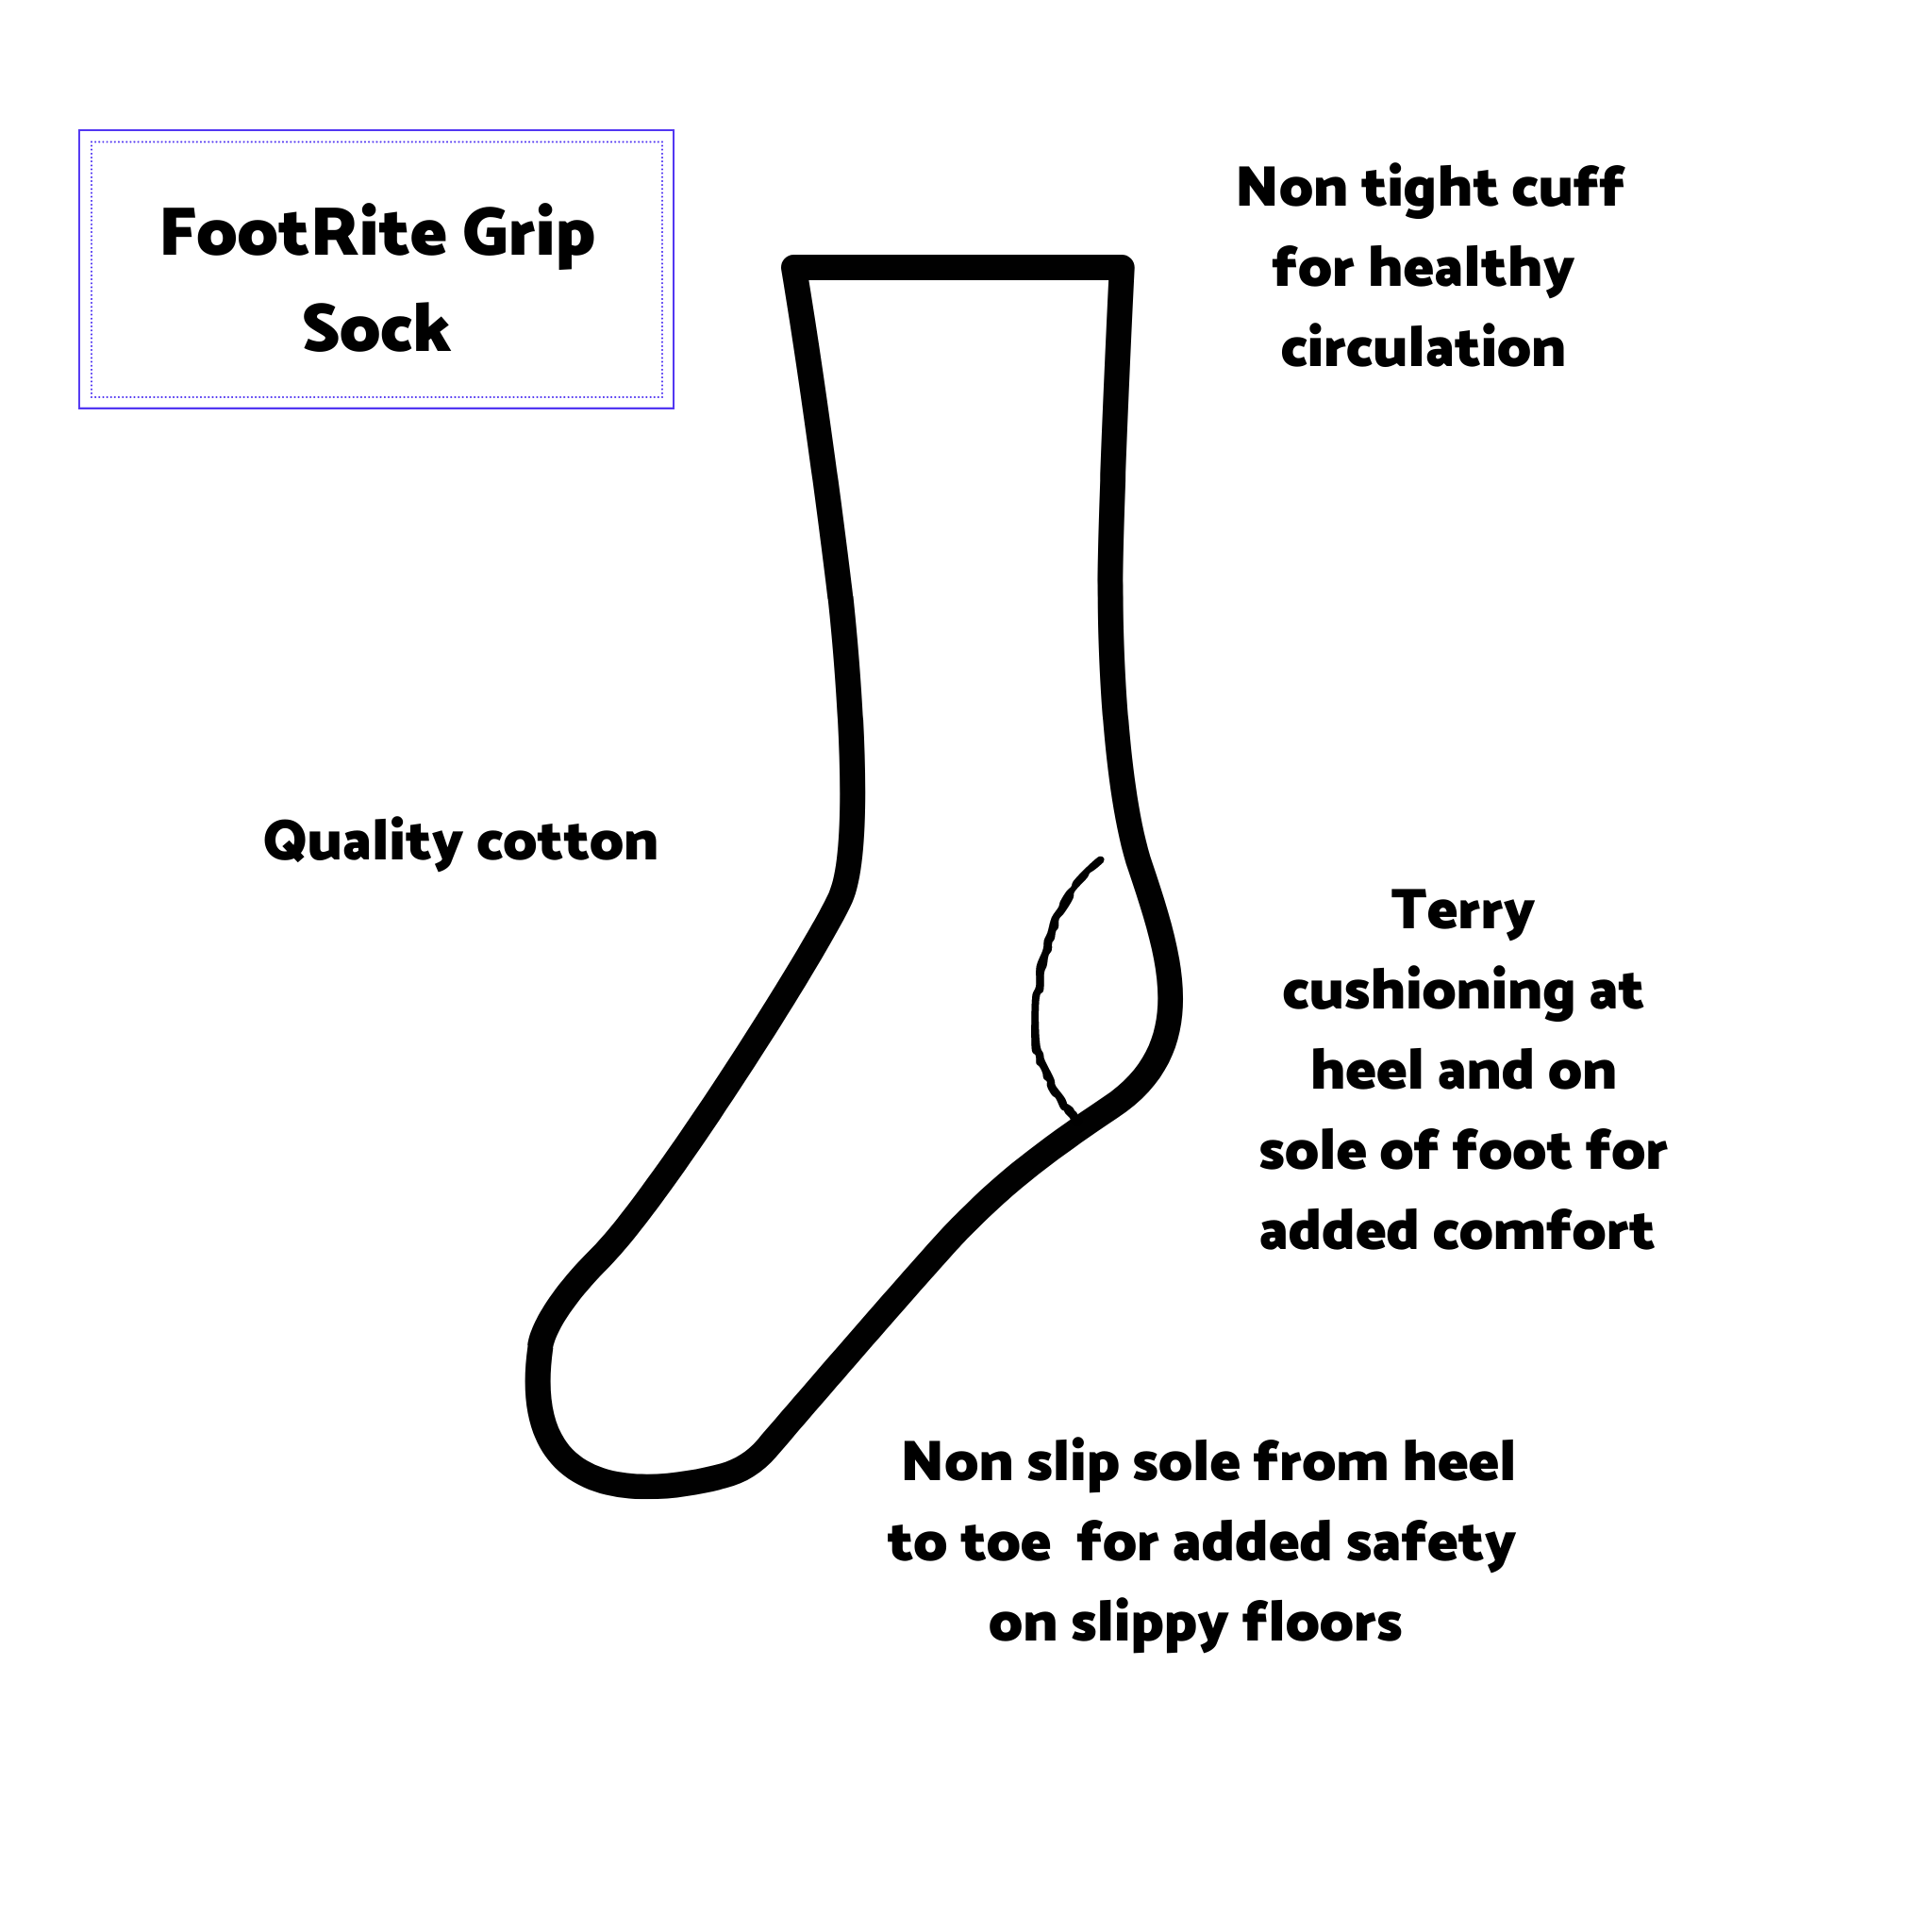 diagram of benefits of foot rite grip sock